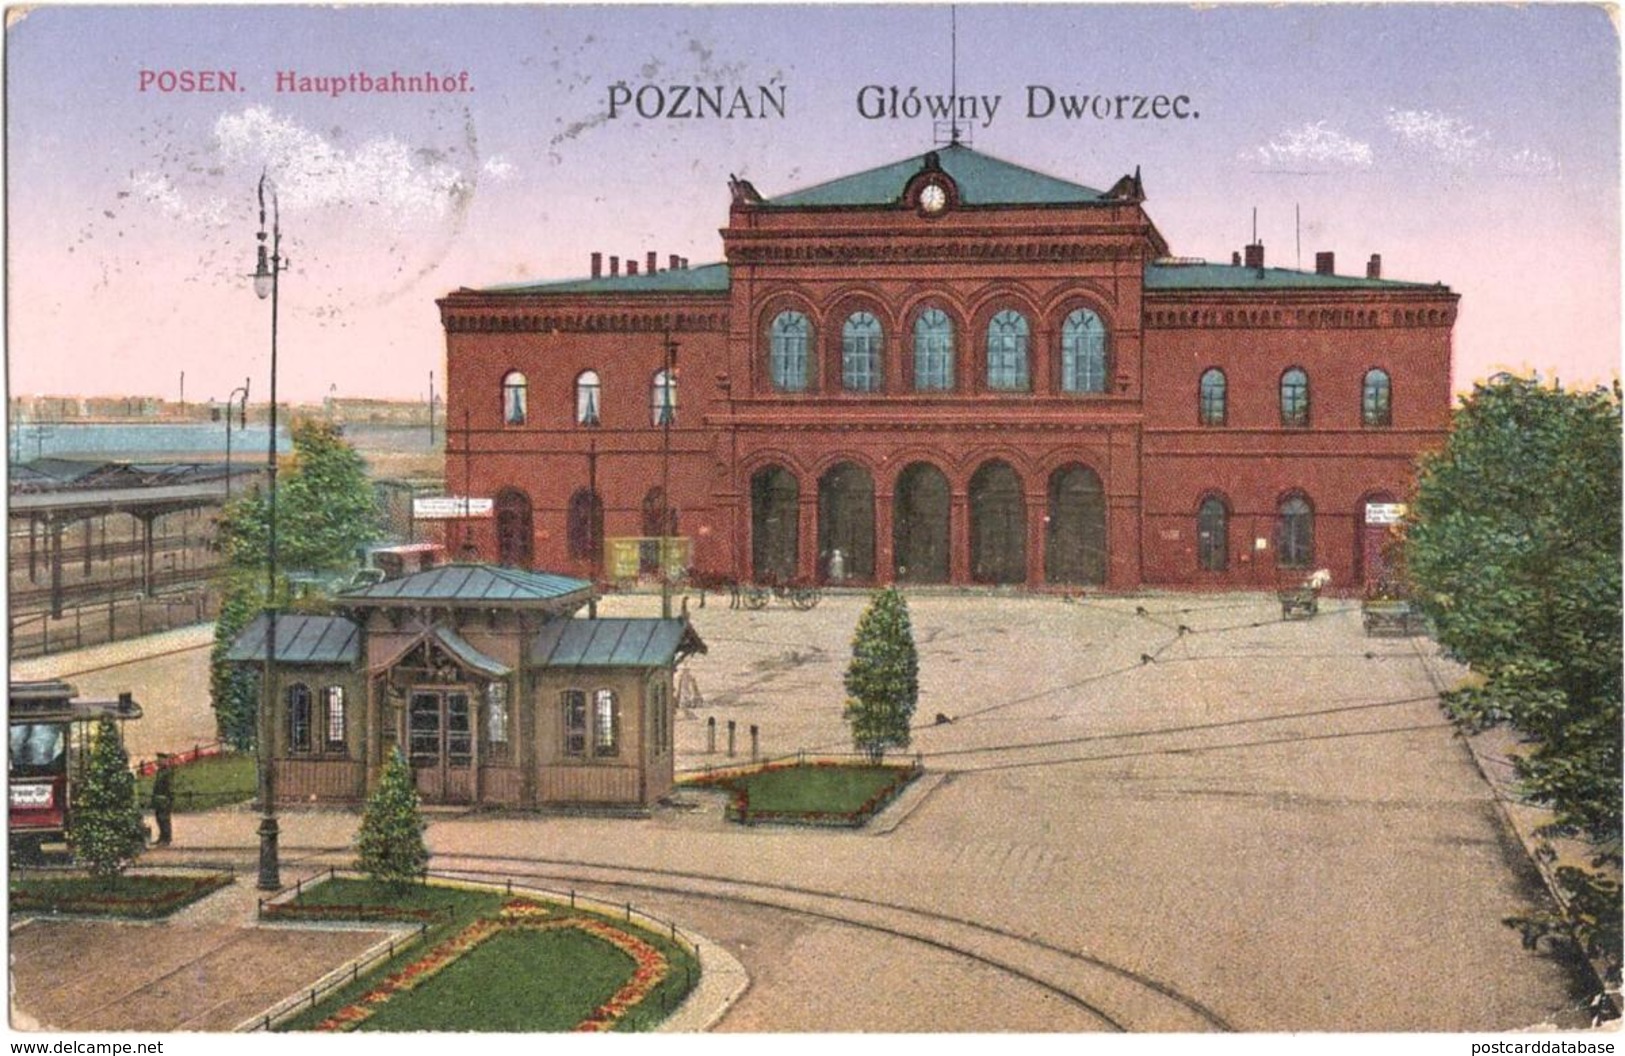 Poznan - Glowny Dworzee - Posen - Hauptbahnhof - & Railway Station - Pologne